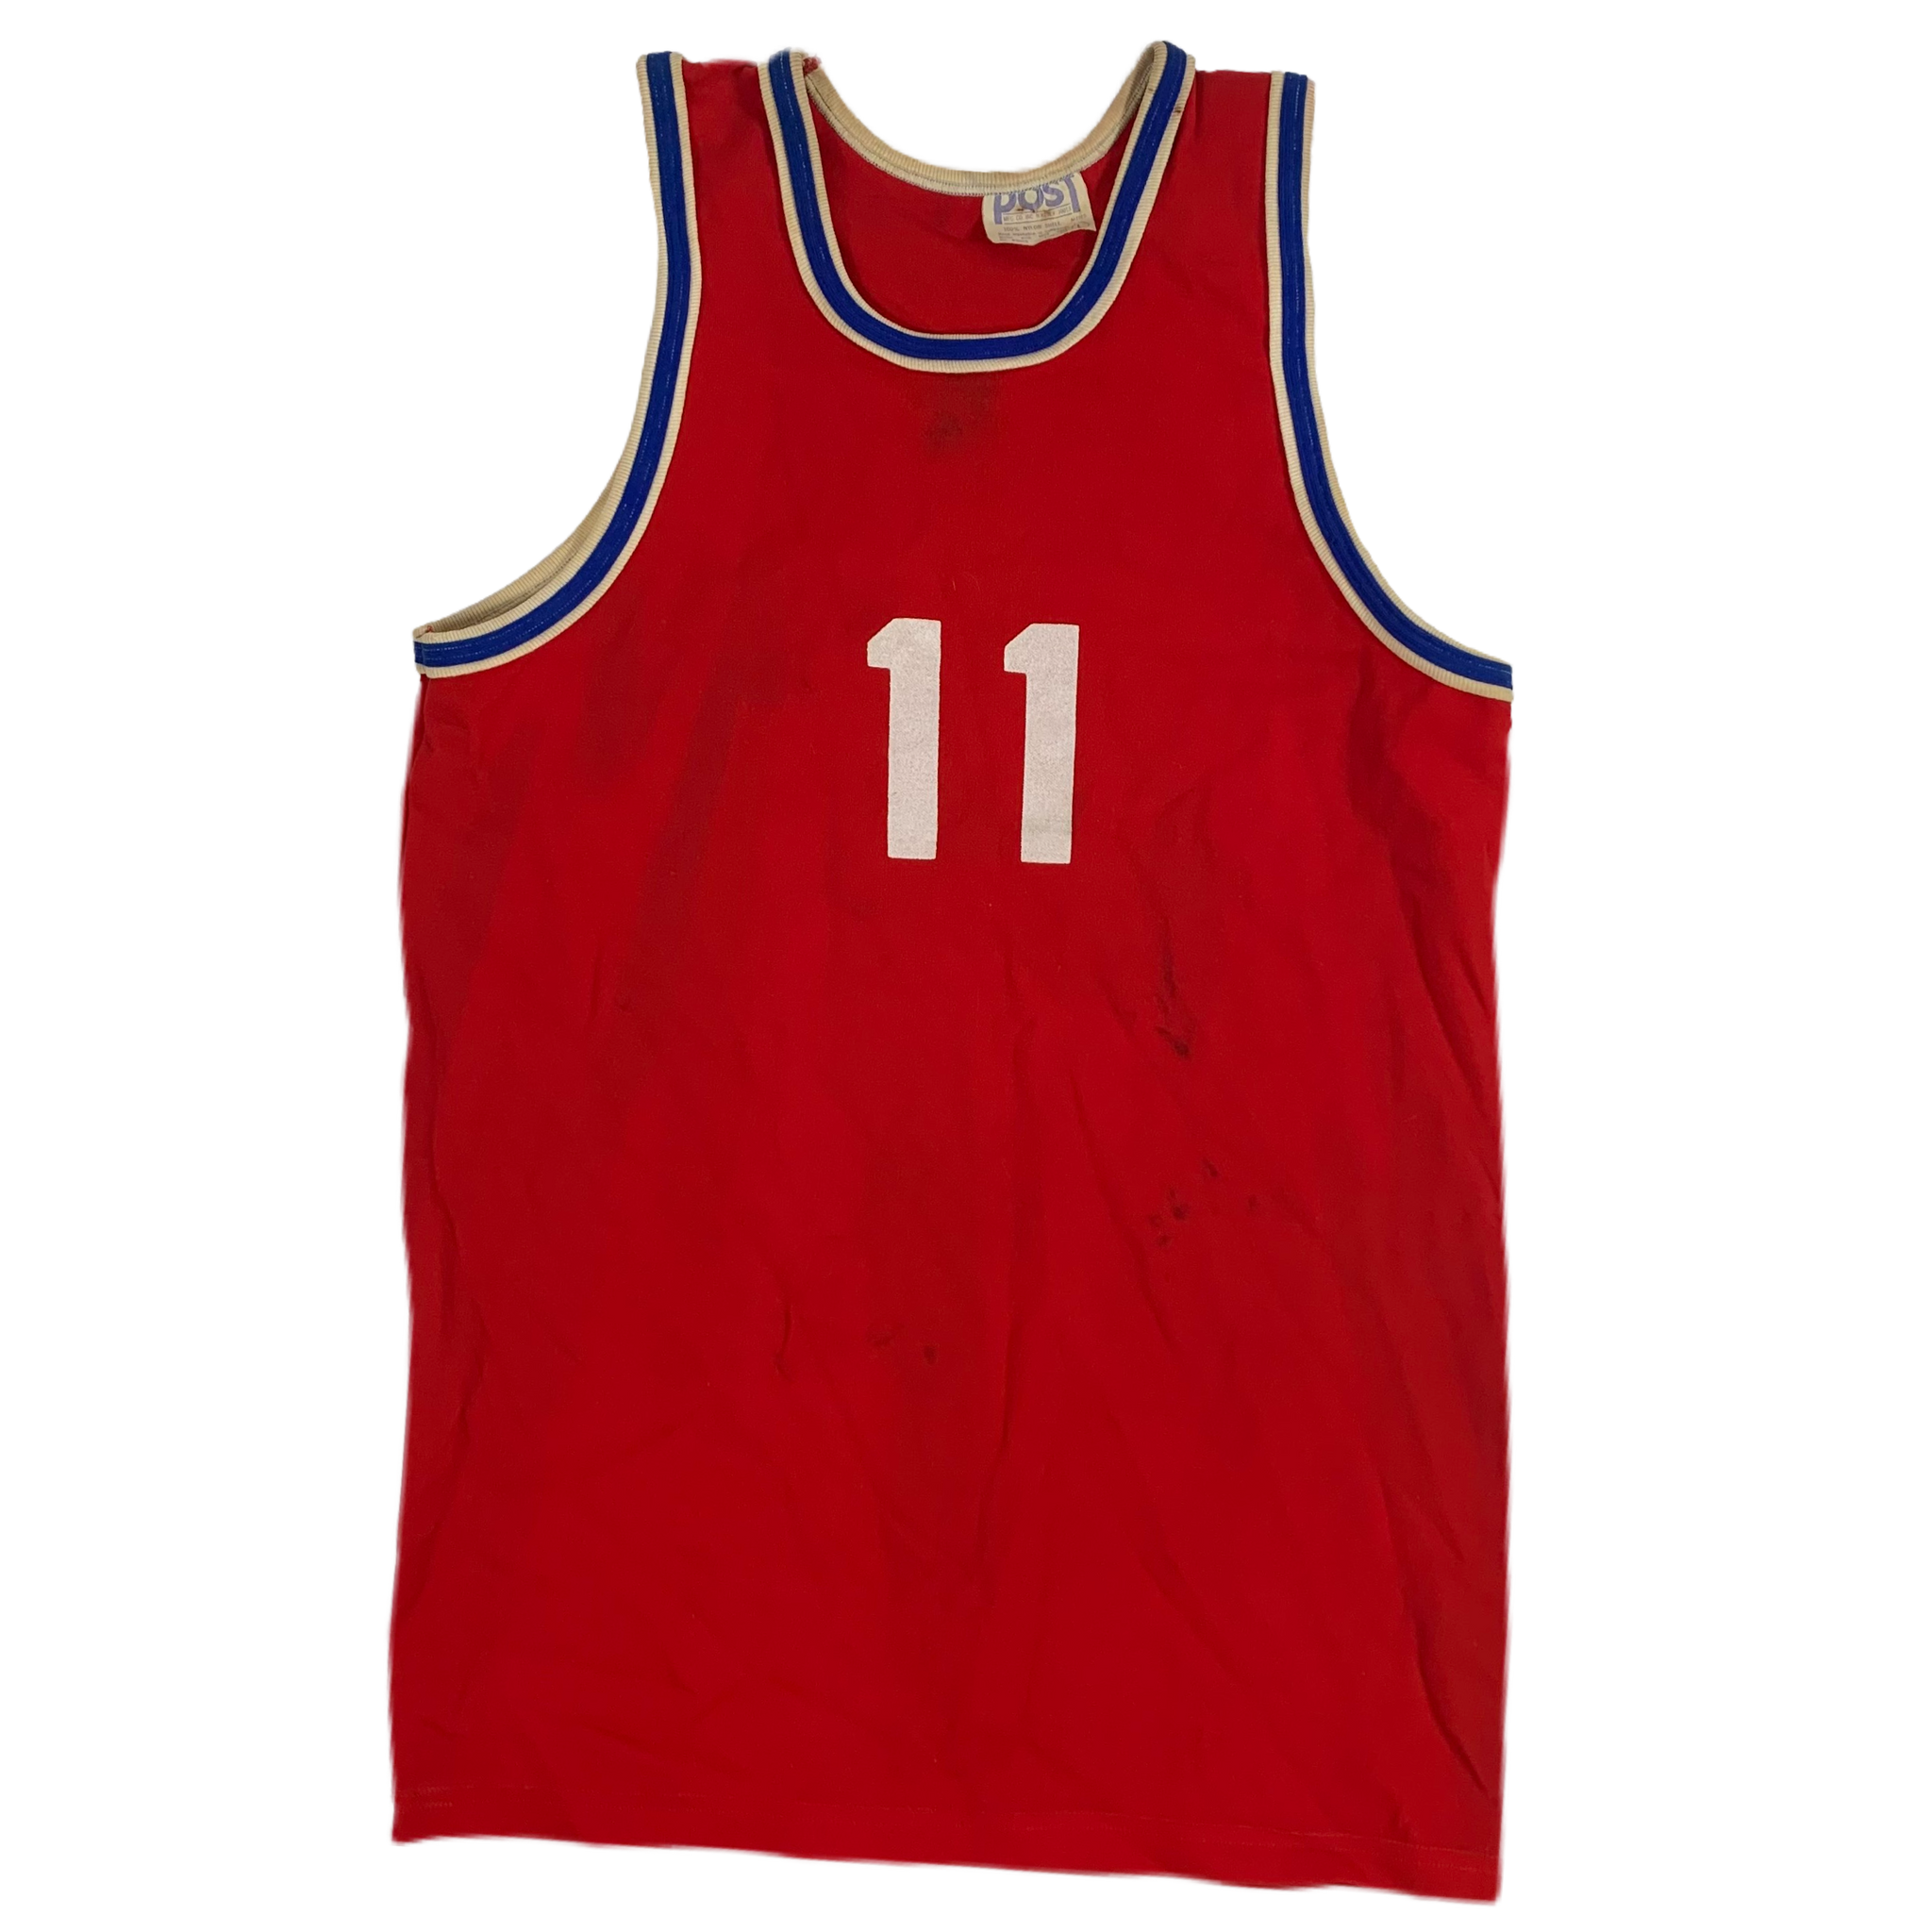 Vintage Basketball Jersey Sign